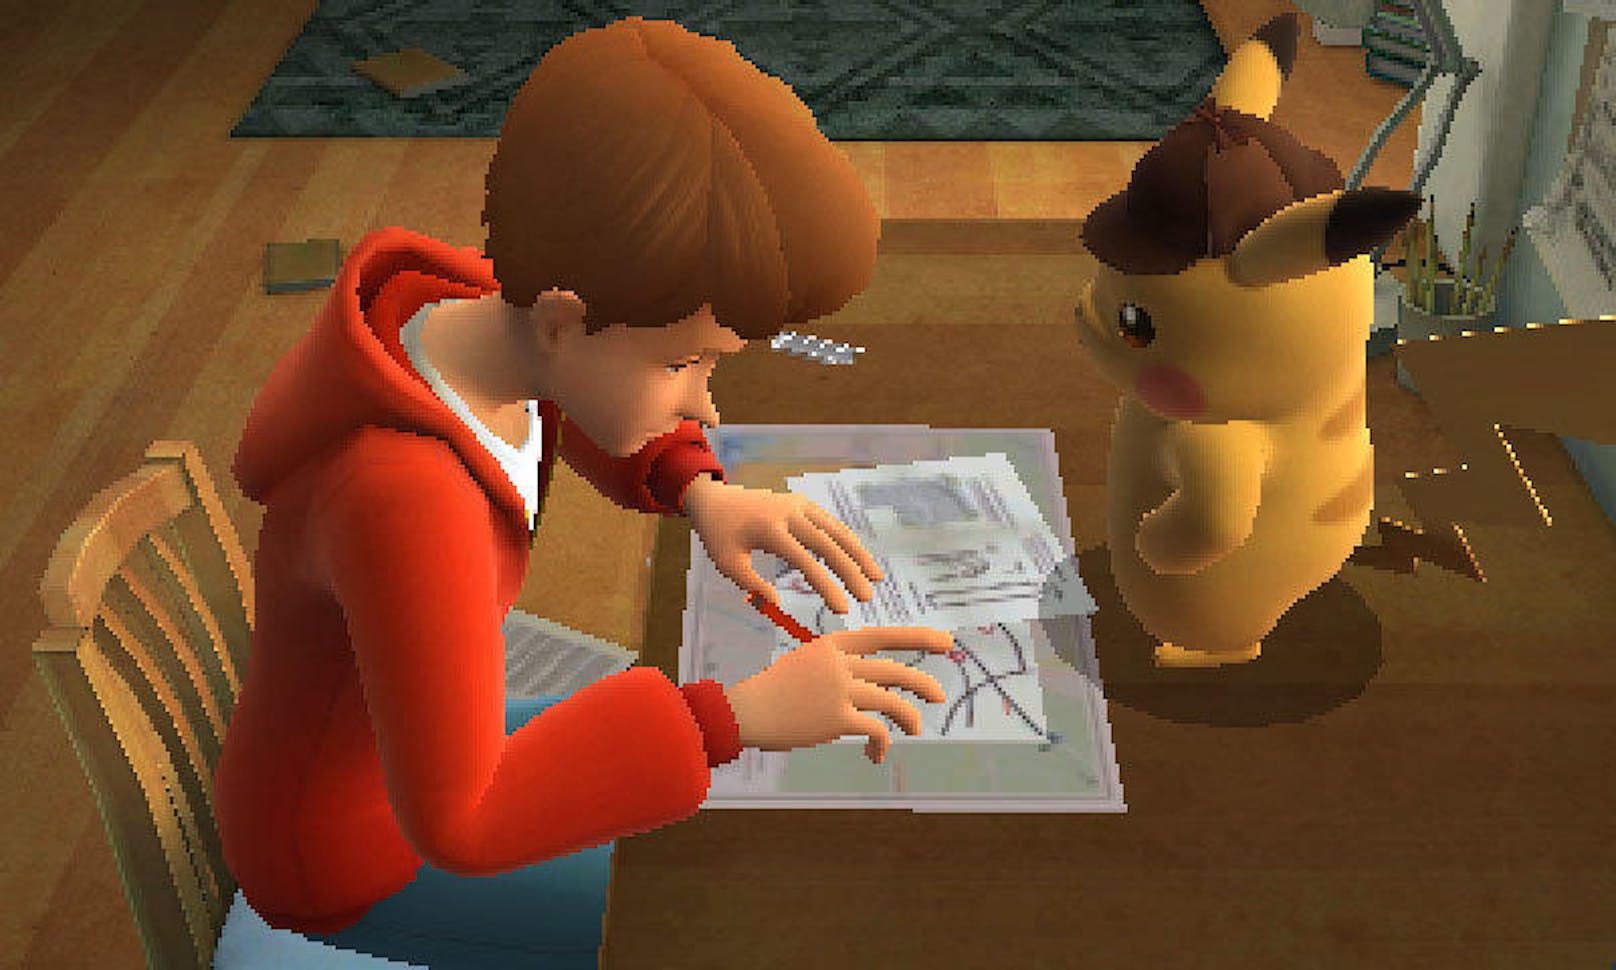 Der Star des Spiels ist ein ungewöhnliches Pikachu, das - ganz dem Titel entsprechend - allerlei knifflige Kriminalfälle lösen muss. Der gelbe Geselle trägt einen Hut, auf den Sherlock Holmes persönlich neidisch wäre, und hat eine Vorliebe für Kaffee.